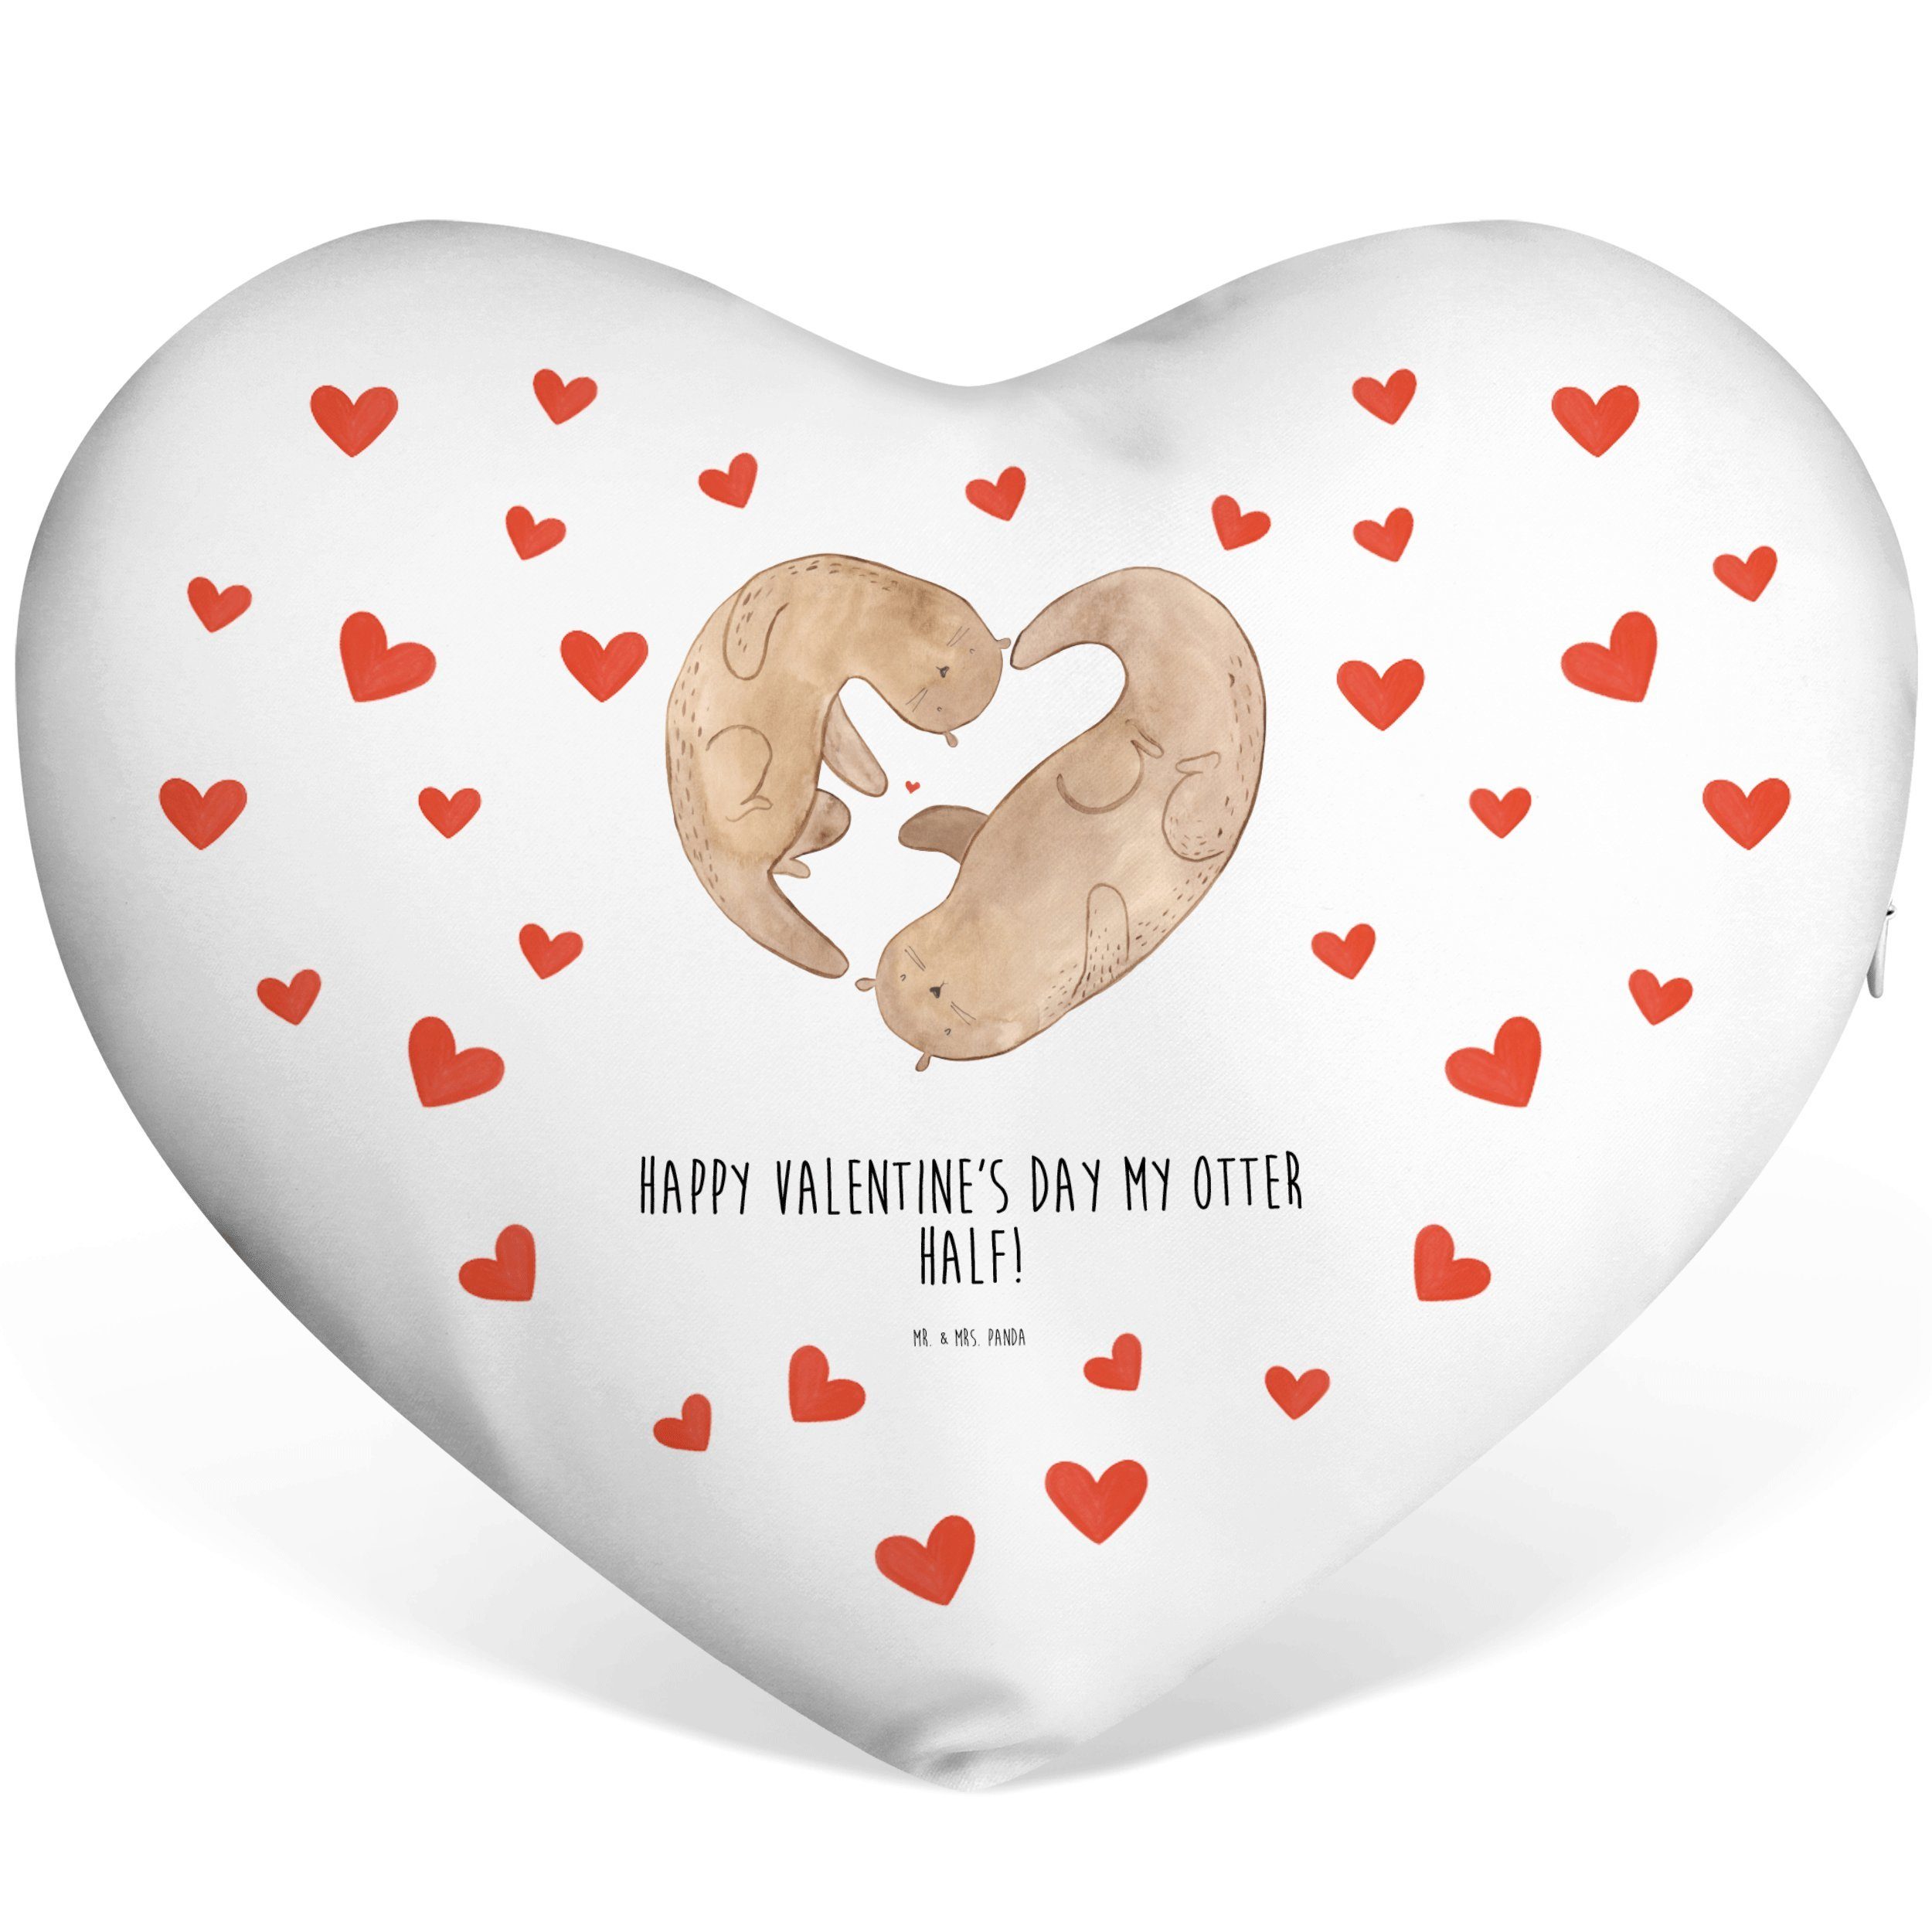 Mr. & Mrs. Panda Dekokissen Otter Valentine - Weiß - Geschenk, Herzkissen, Herzform, Geschenk für